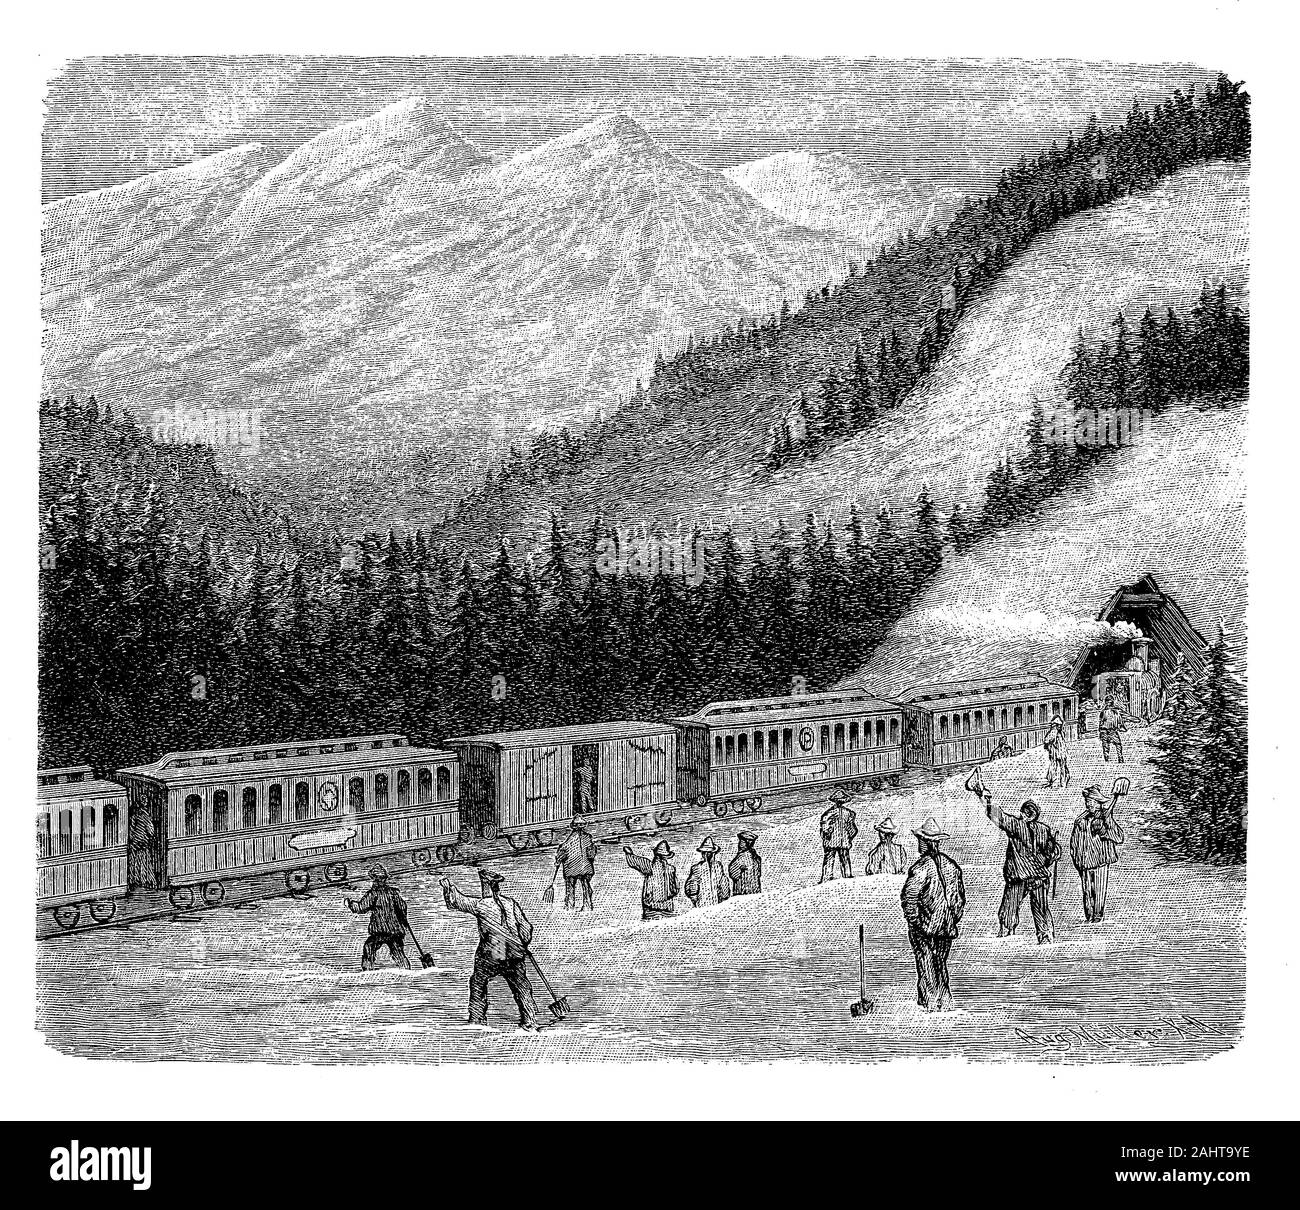 Construction de la Central Pacific Railroad en Sierra Nevada rempli par les travailleurs Chinois immigrent, vers 1870 Banque D'Images